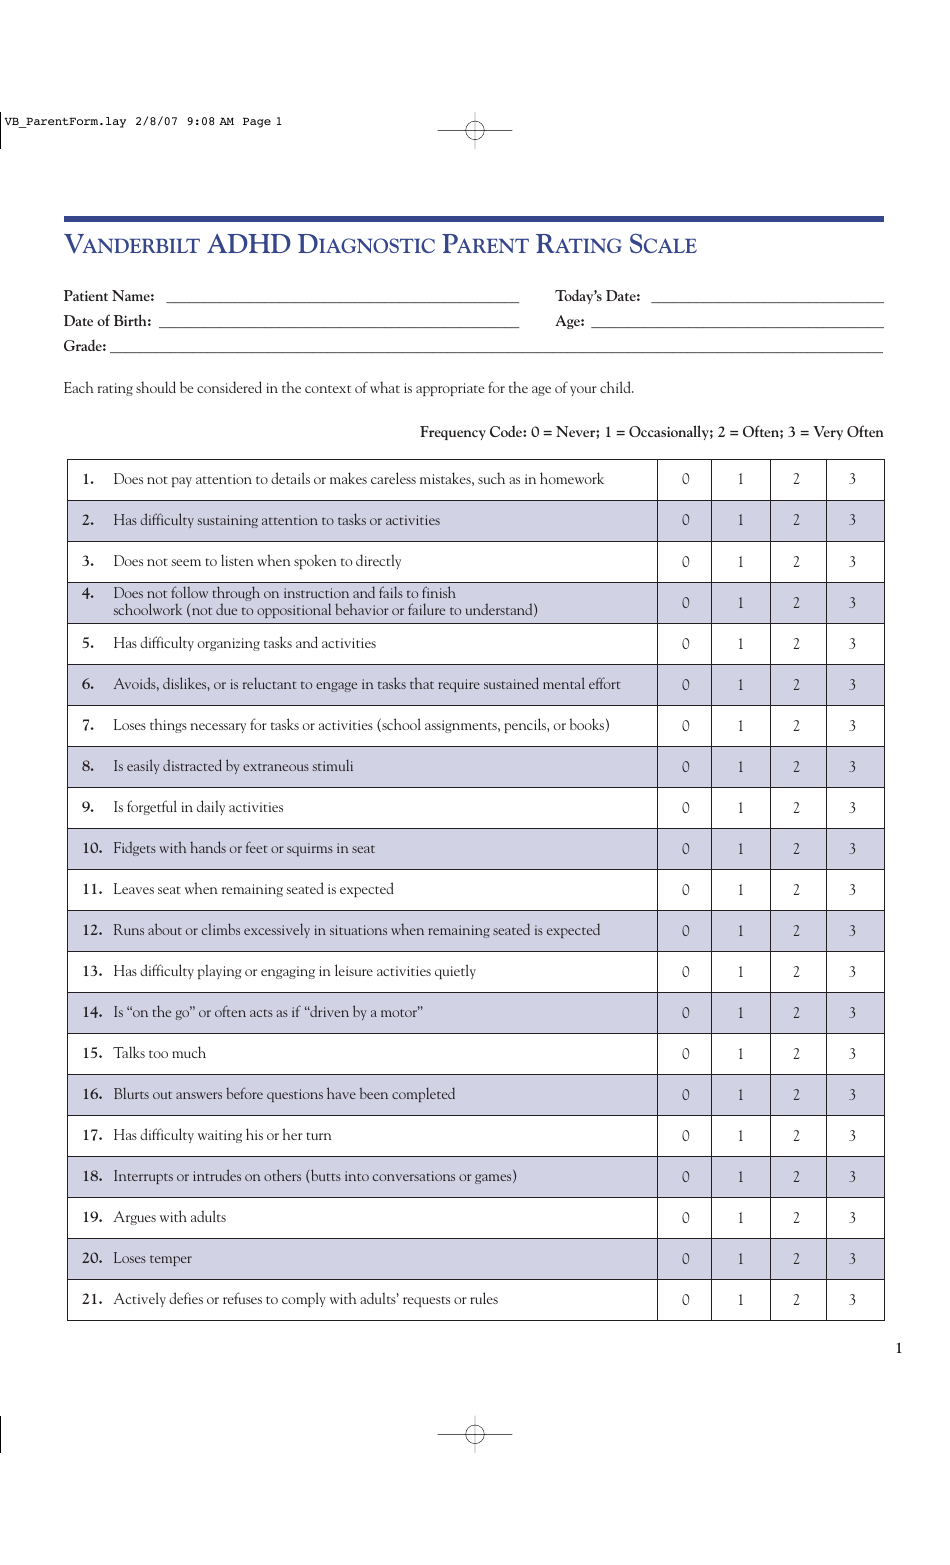 Adhd Diagnostic Parent Rating Scale Form Vanderbilt Download 